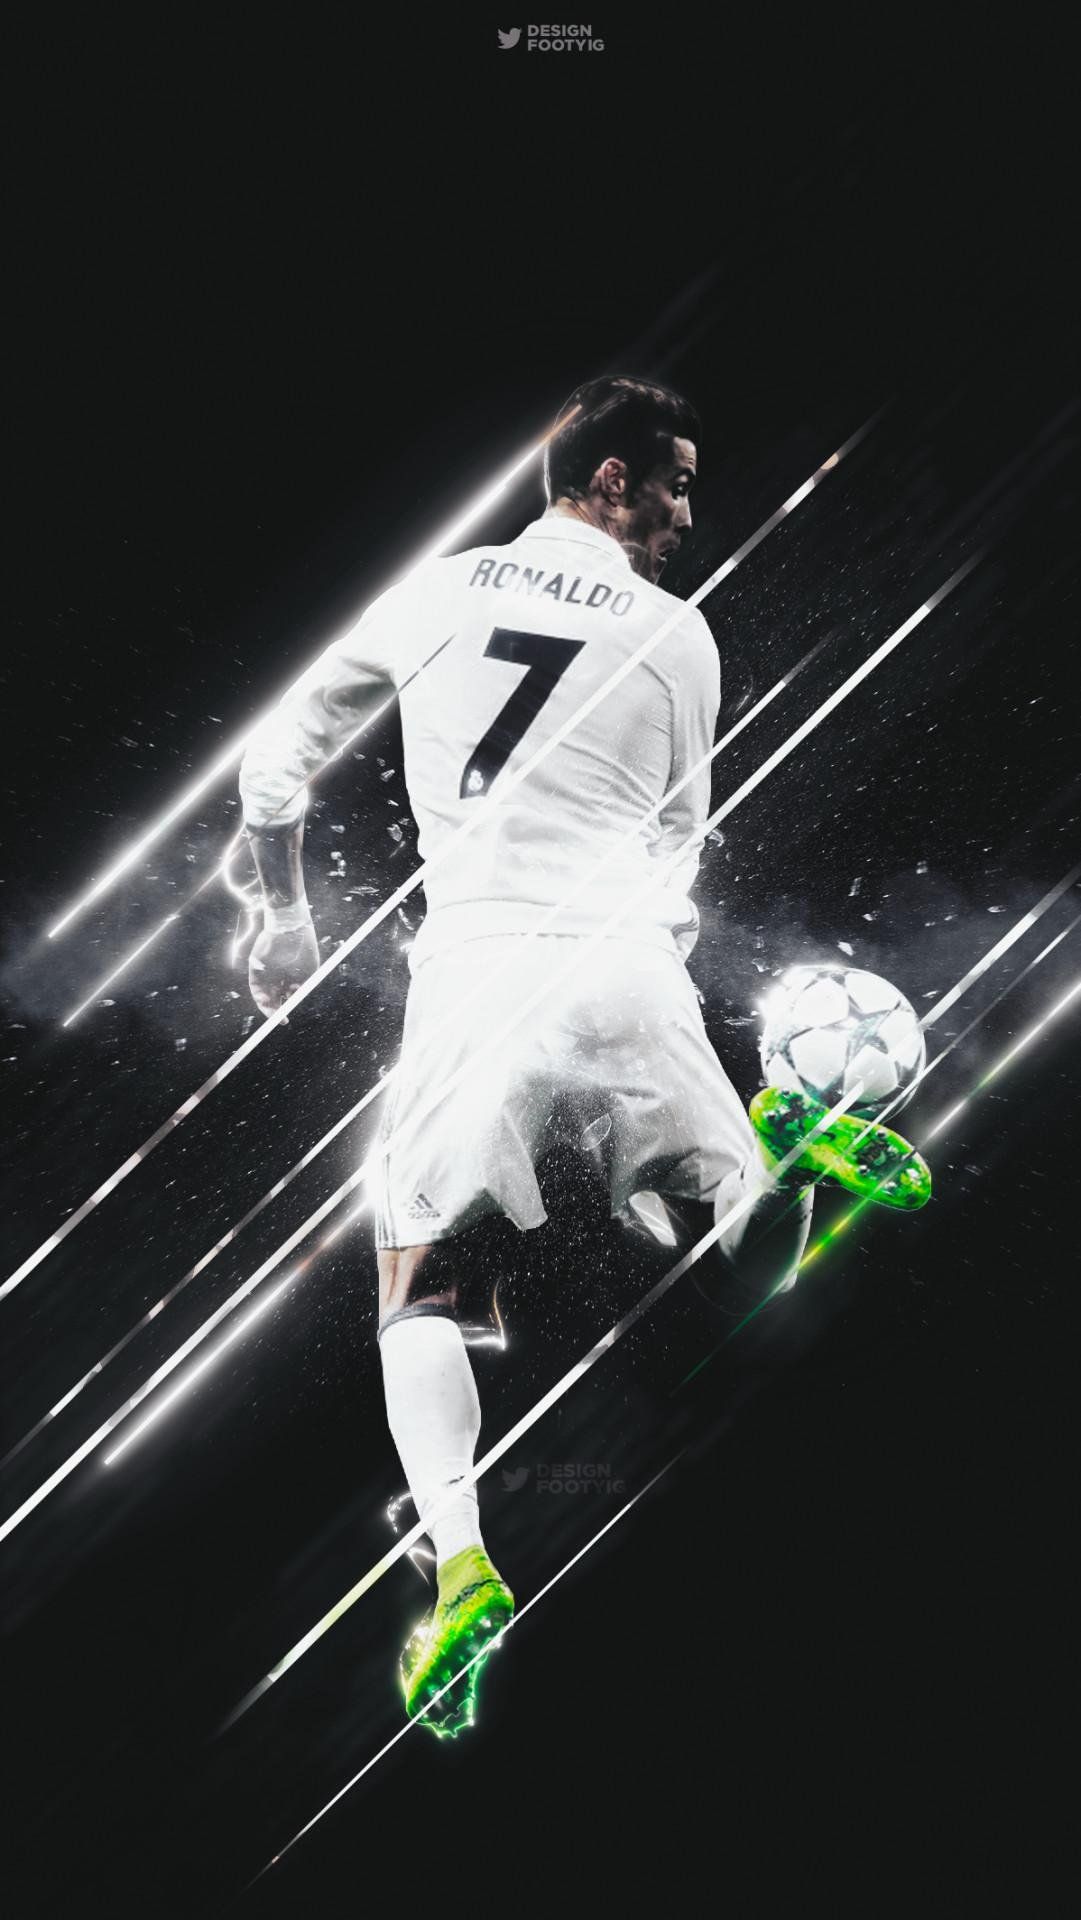 Ronaldo Aesthetic Wallpaper Download